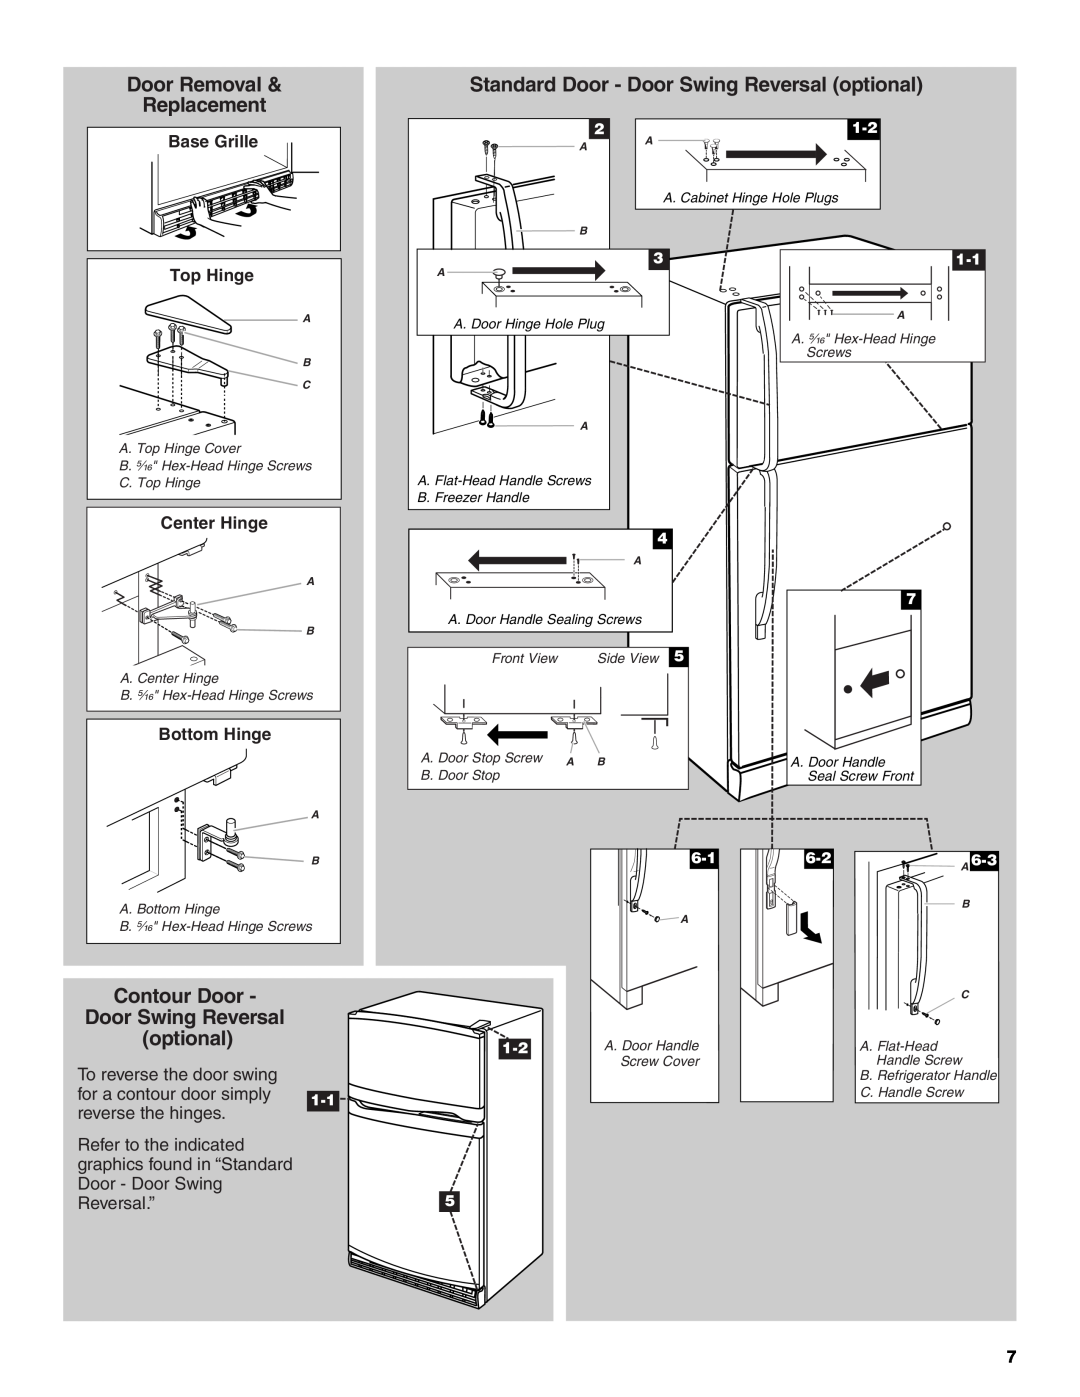 Whirlpool GC3SHEXNQ02 Door Removal, Standard Door - Door Swing Reversal optional, Replacement, Contour Door, Top Hinge 